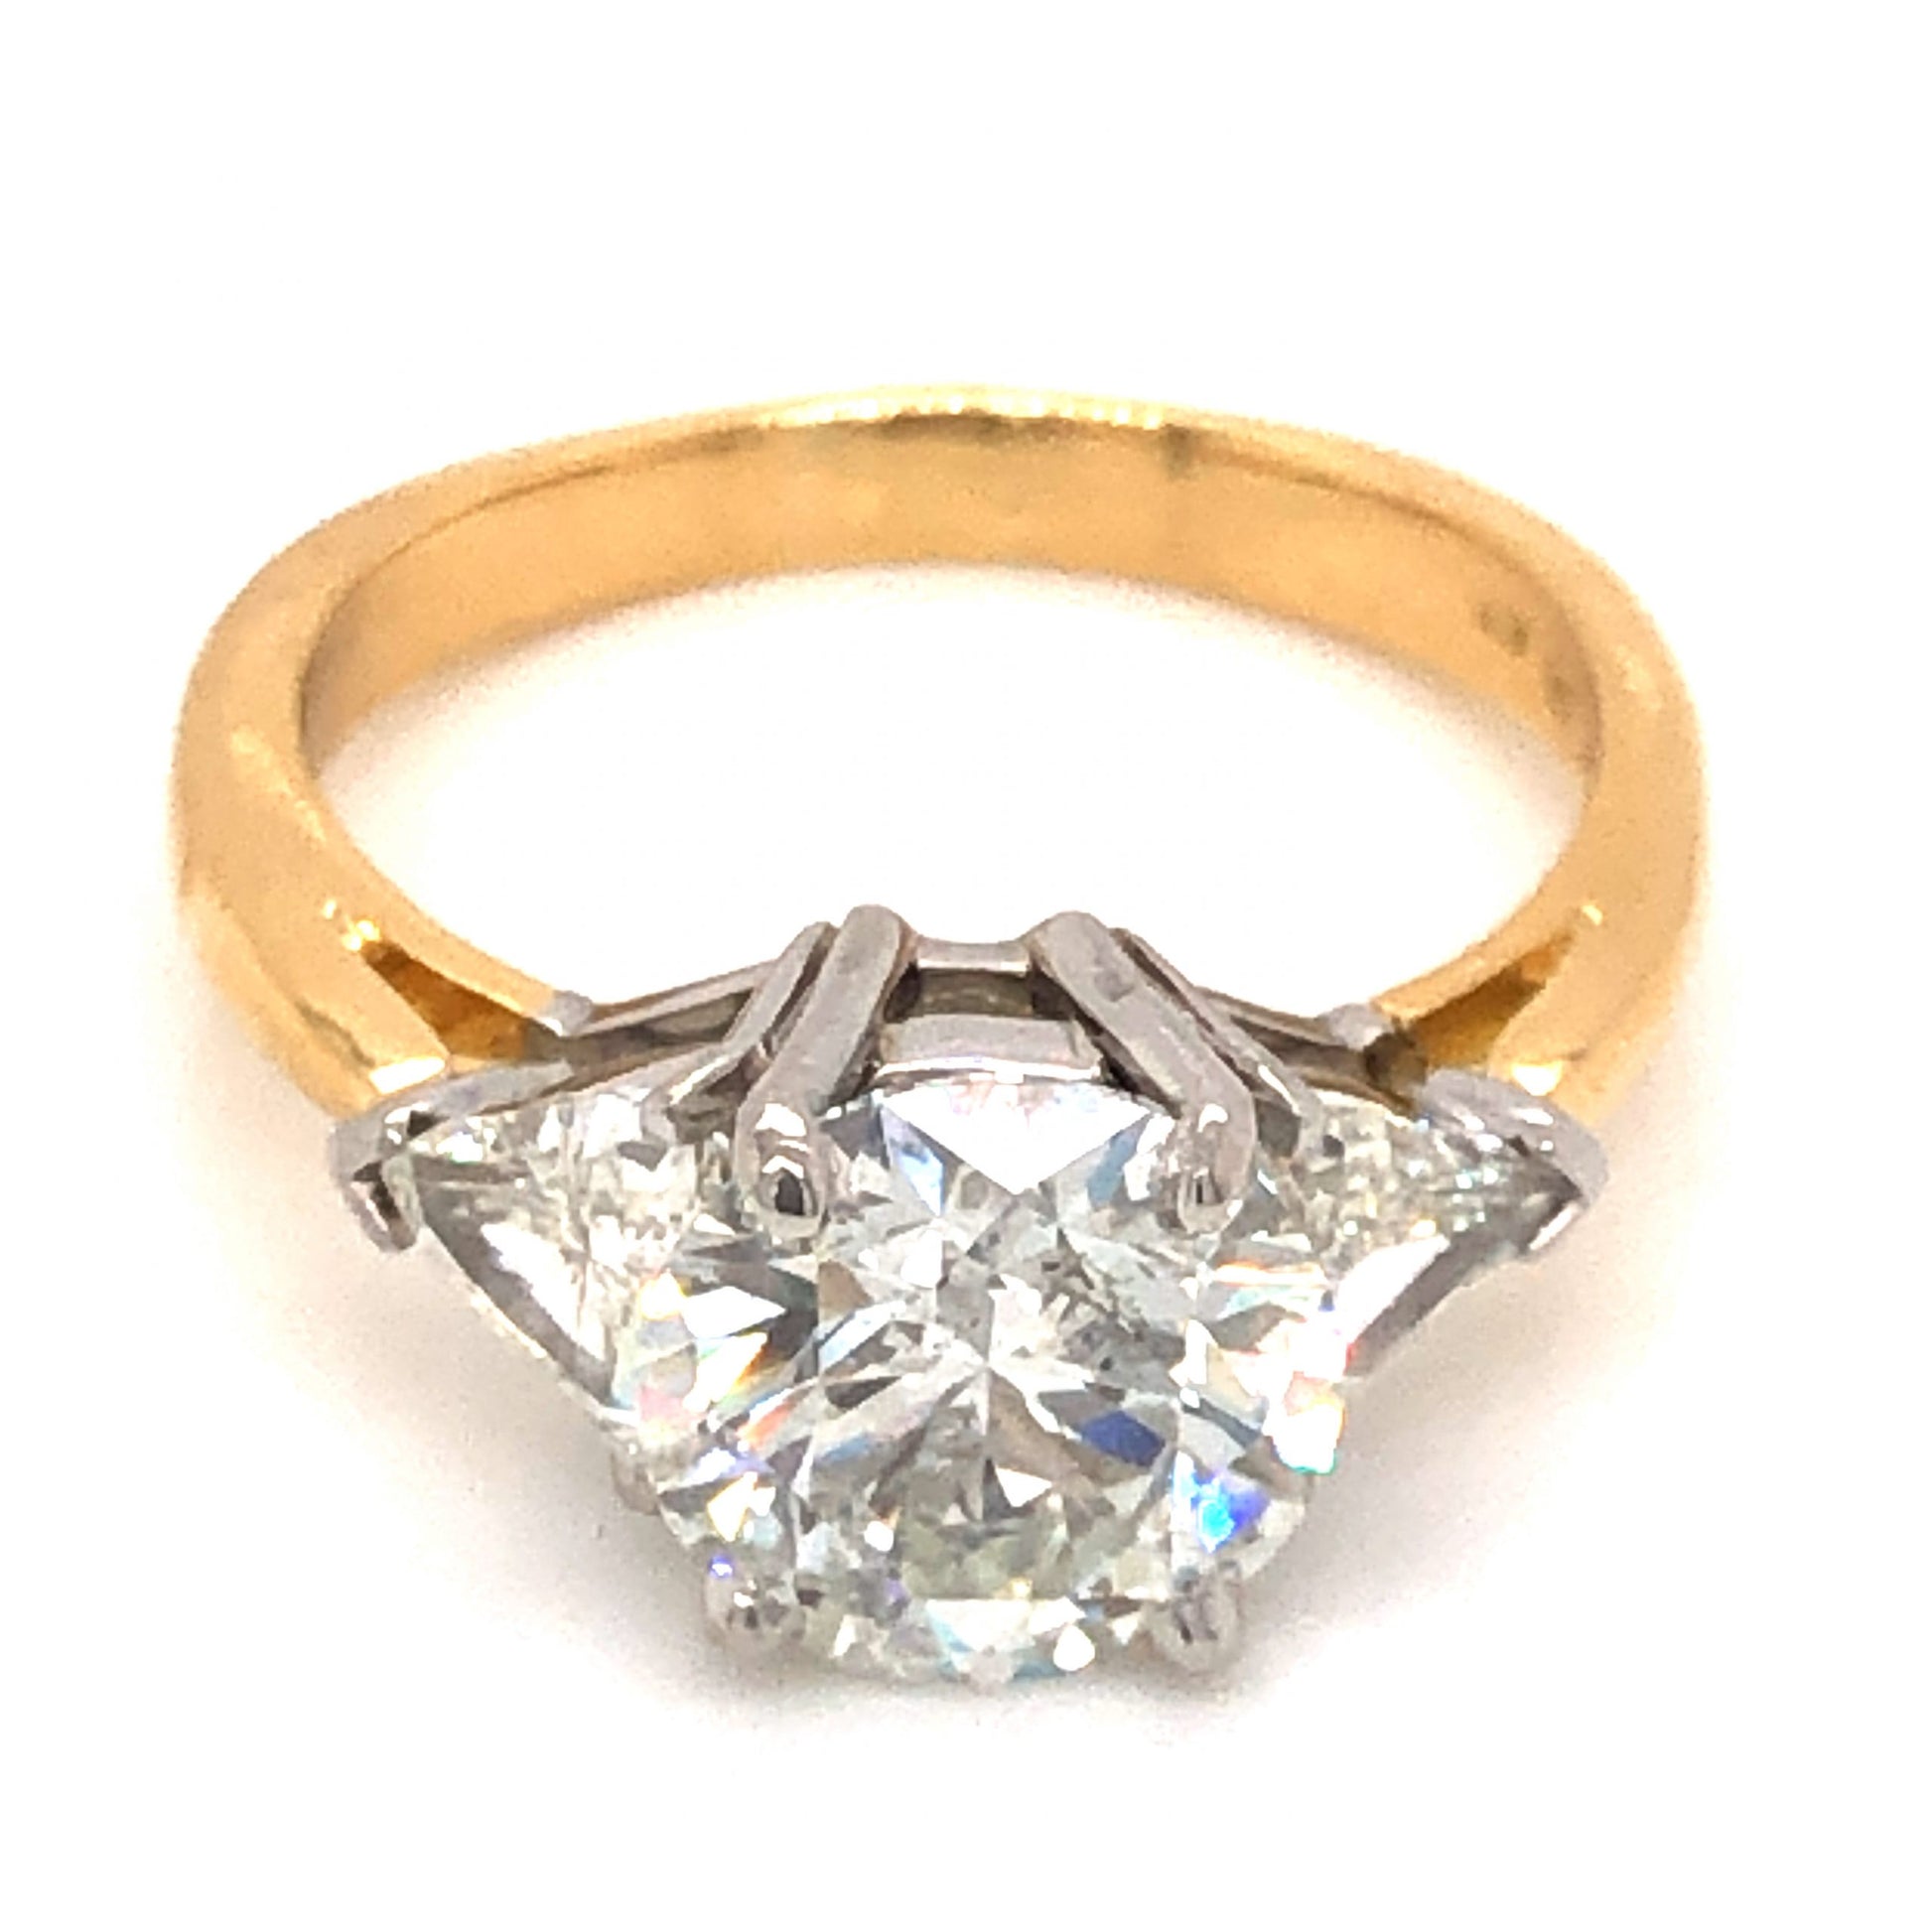 2.09 Three Stone Diamond Engagement Ring in 18k Yellow & White Gold